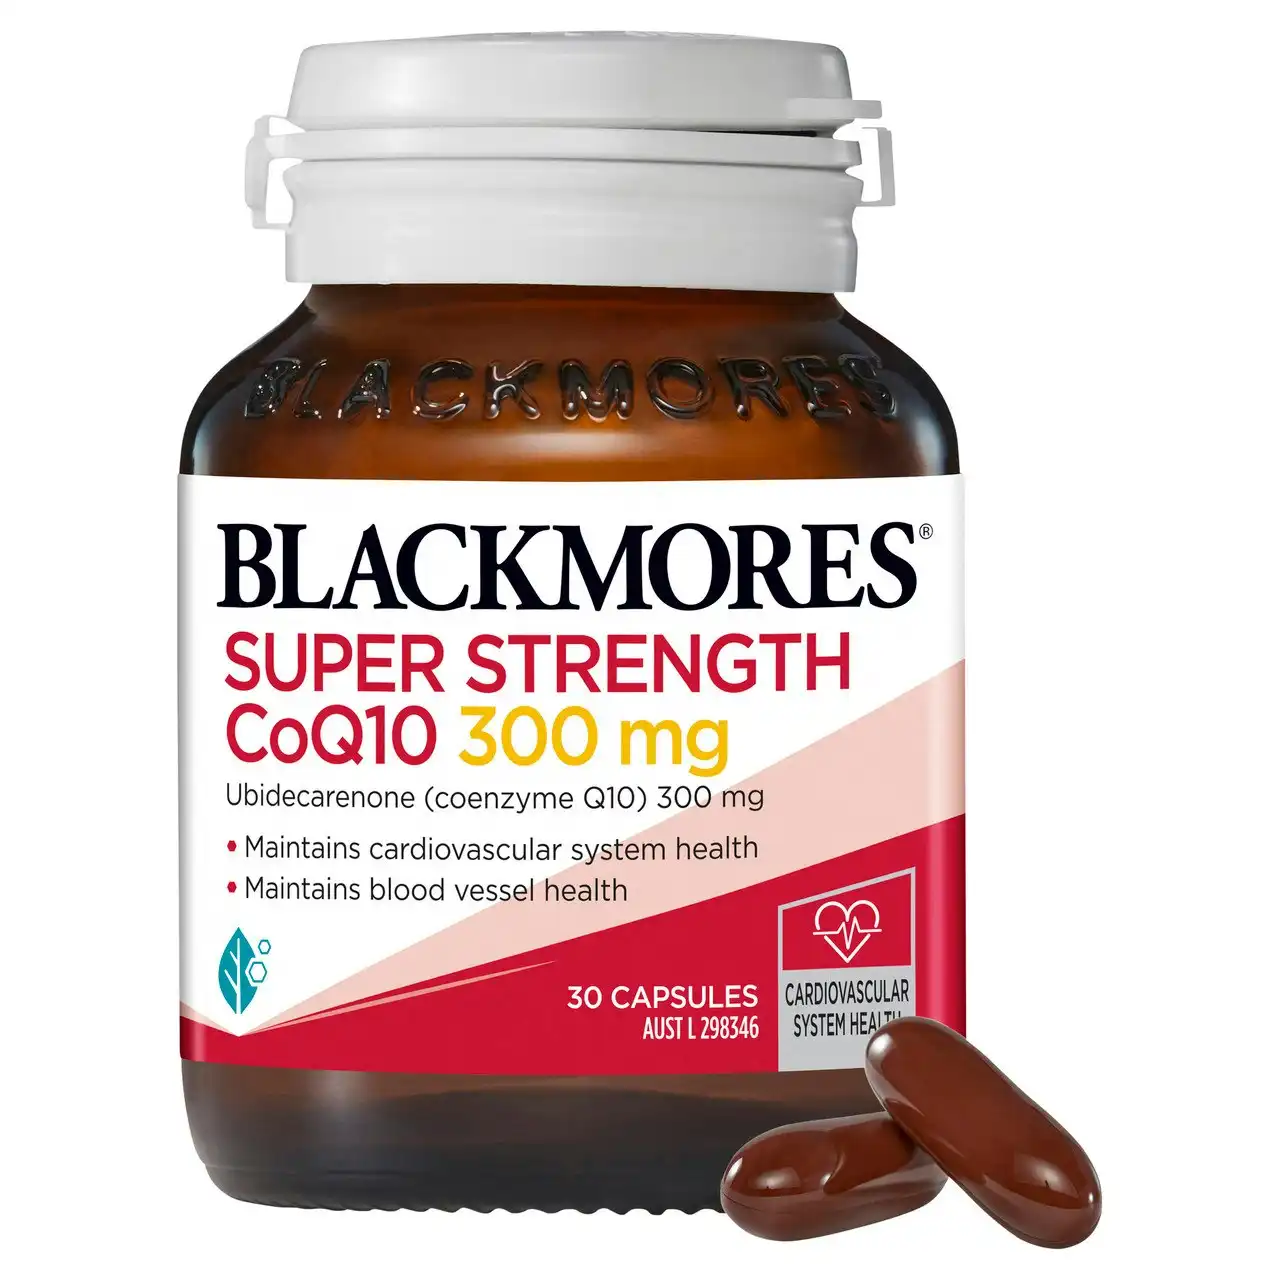 Blackmores SUPER STRENGTH CoQ10 300mg 30 Capsules